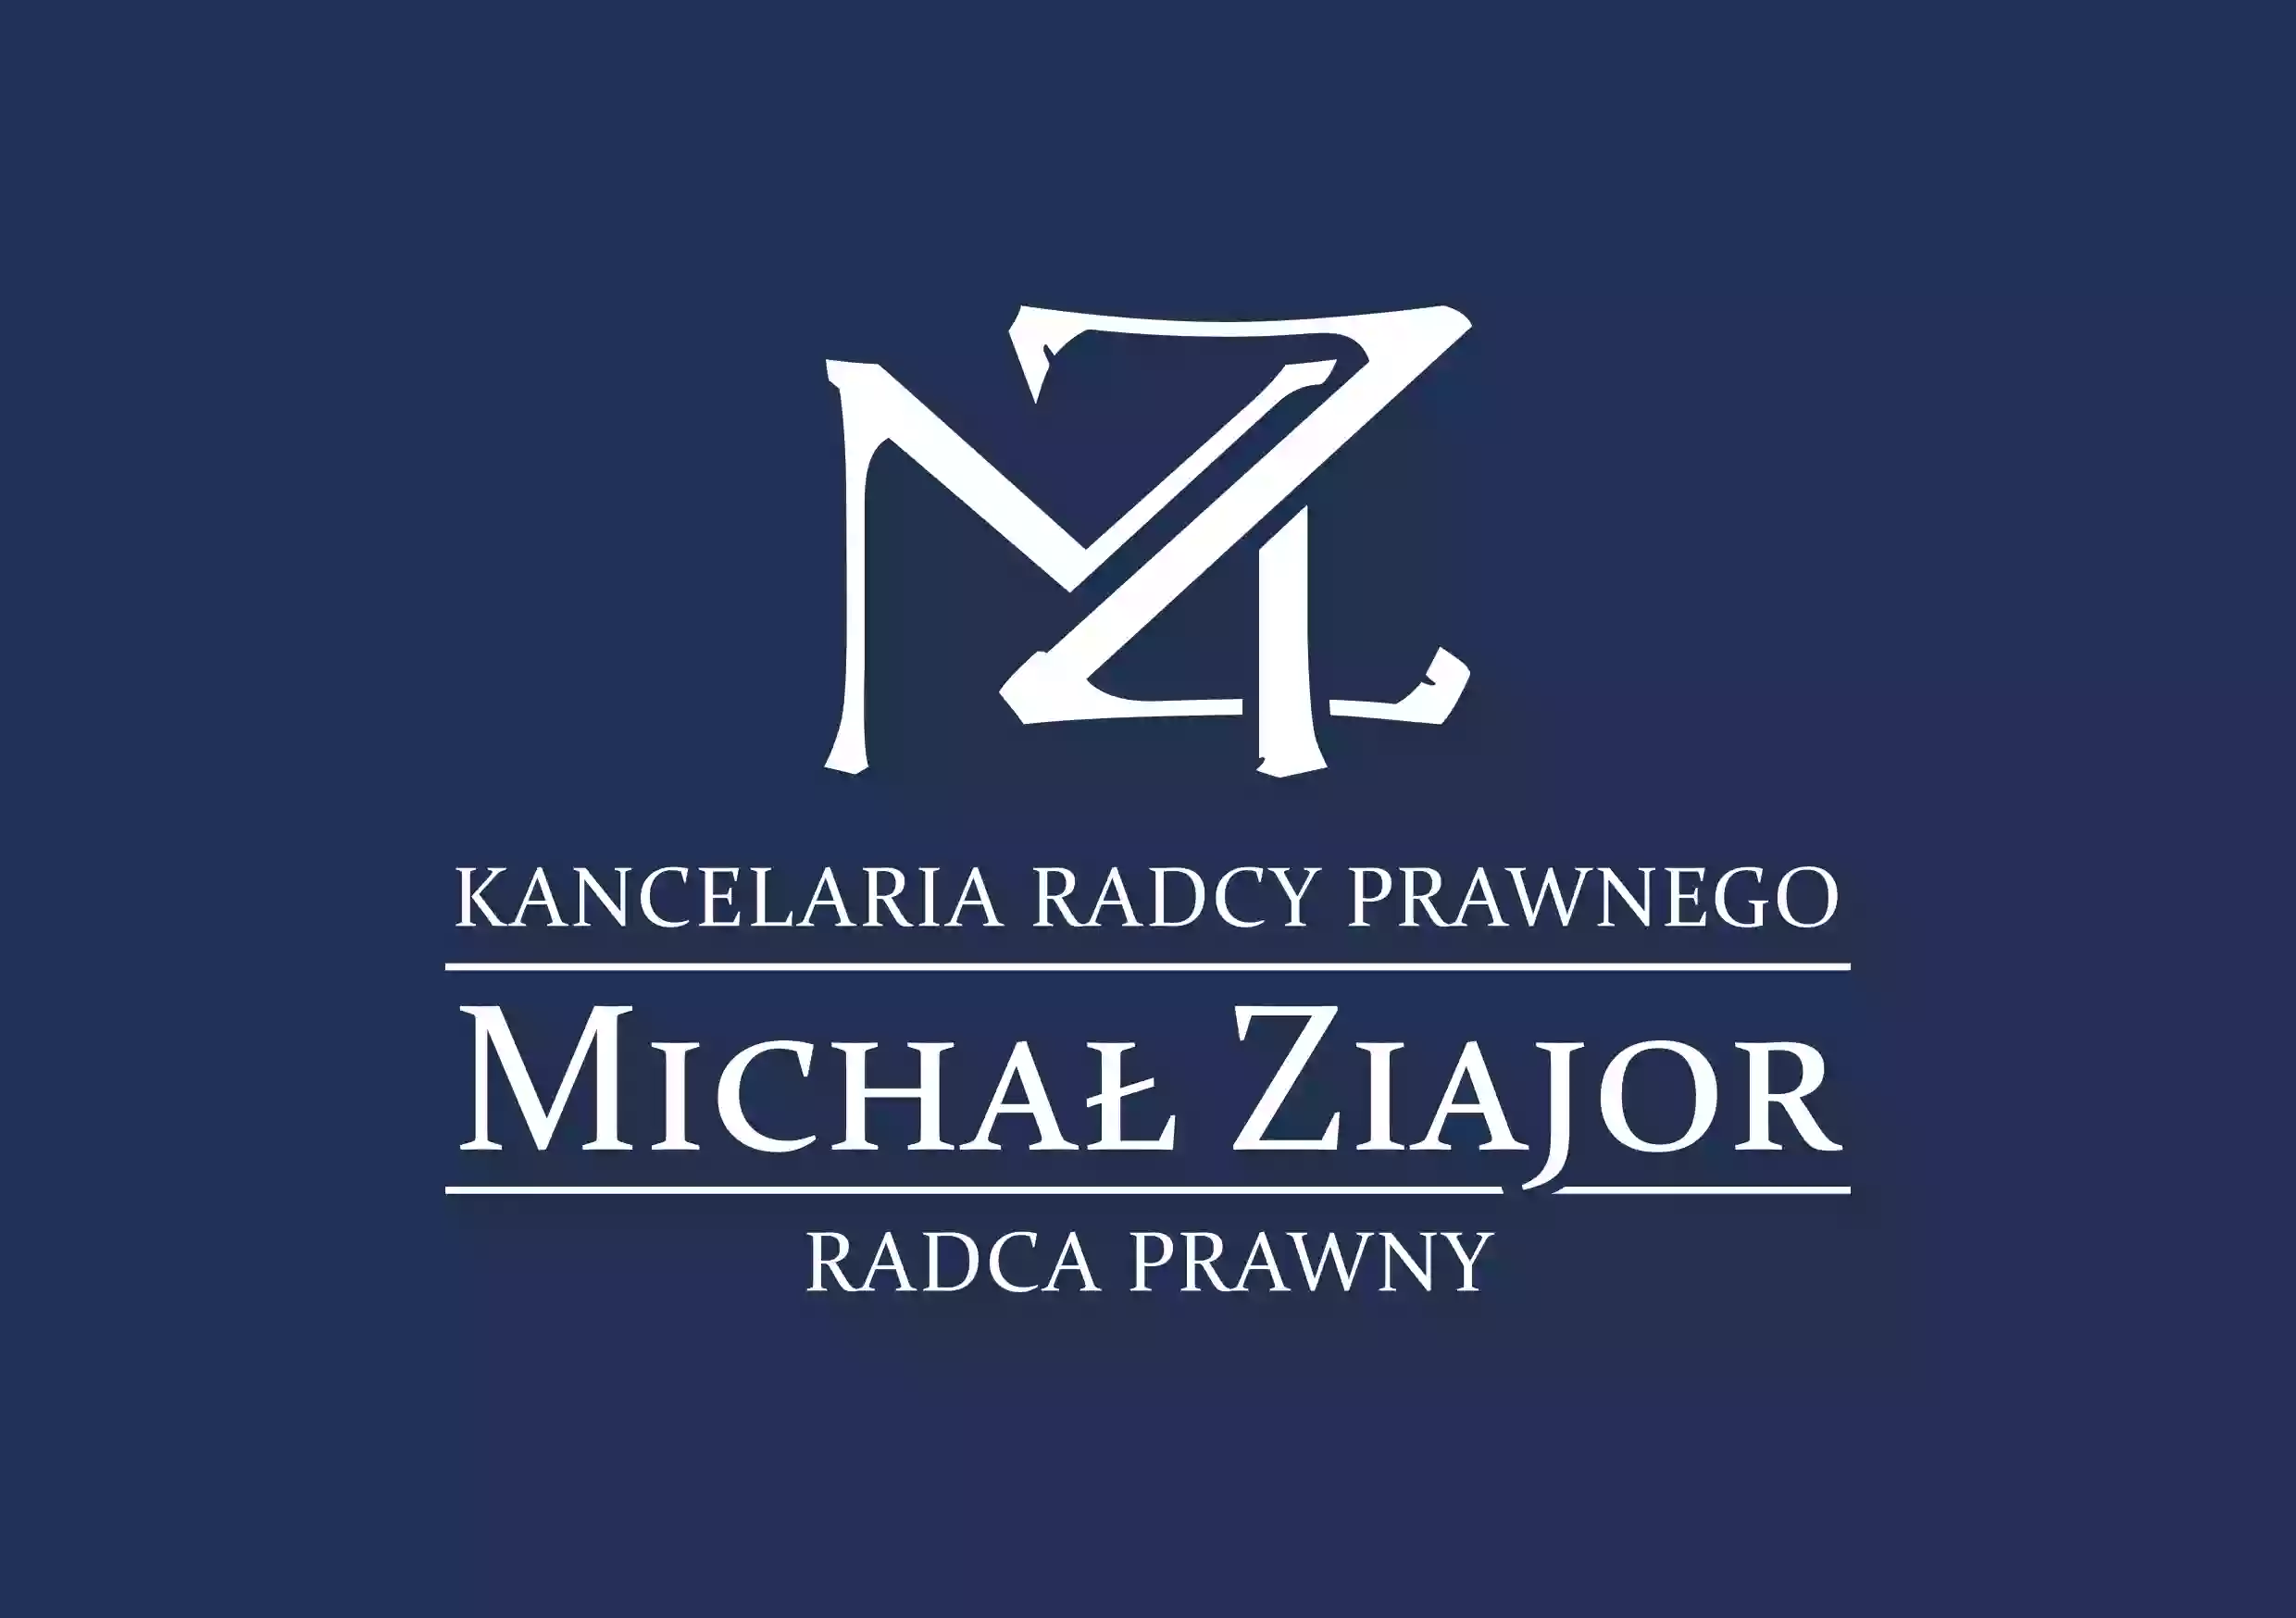 Kancelaria Radcy Prawnego - Michał Ziajor